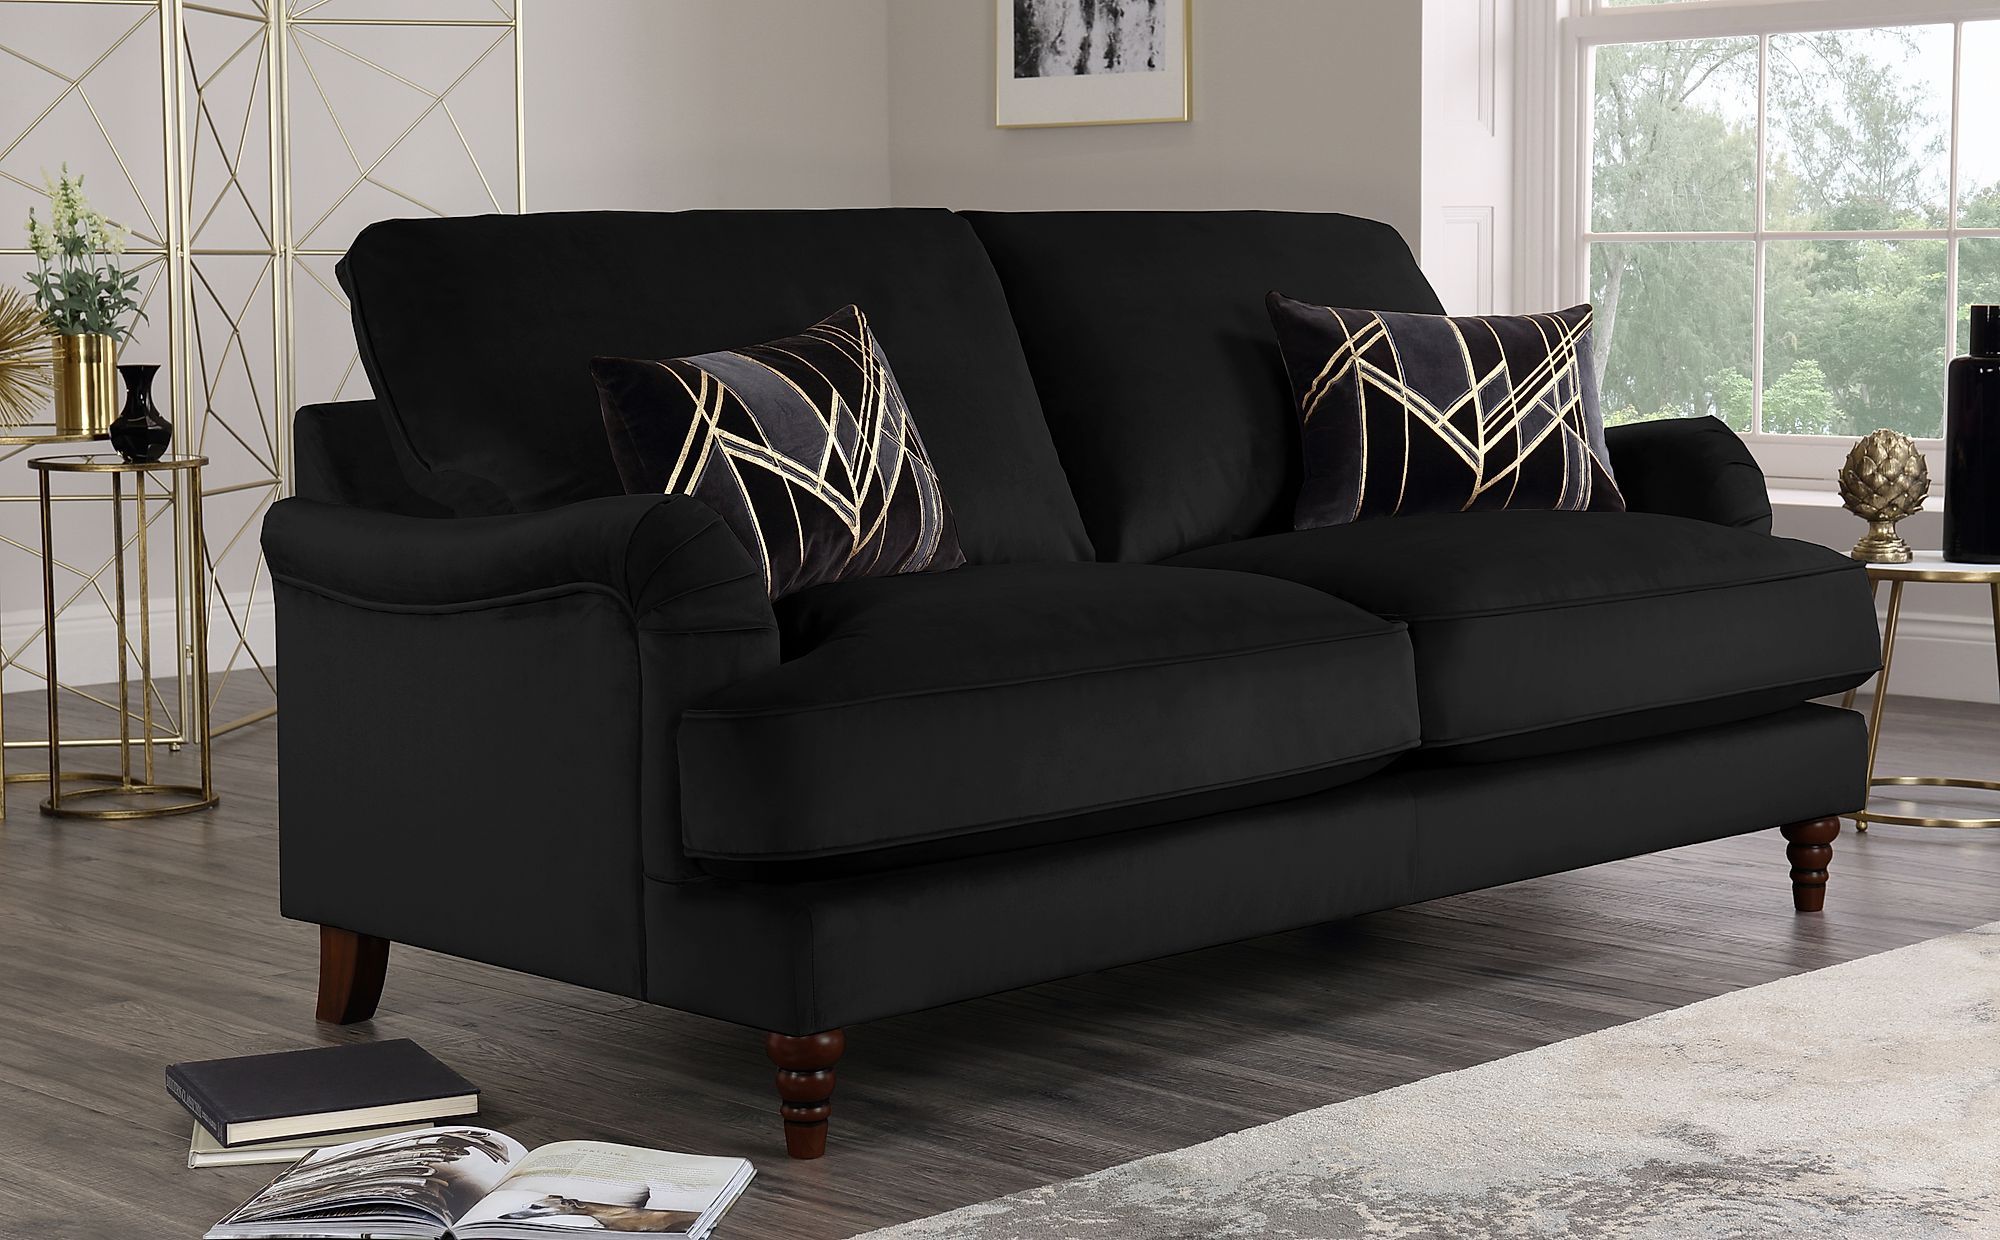 Charleston Black Velvet 3 Seater Sofa | Furniture Choice Throughout Black Velvet Sofas (View 2 of 20)